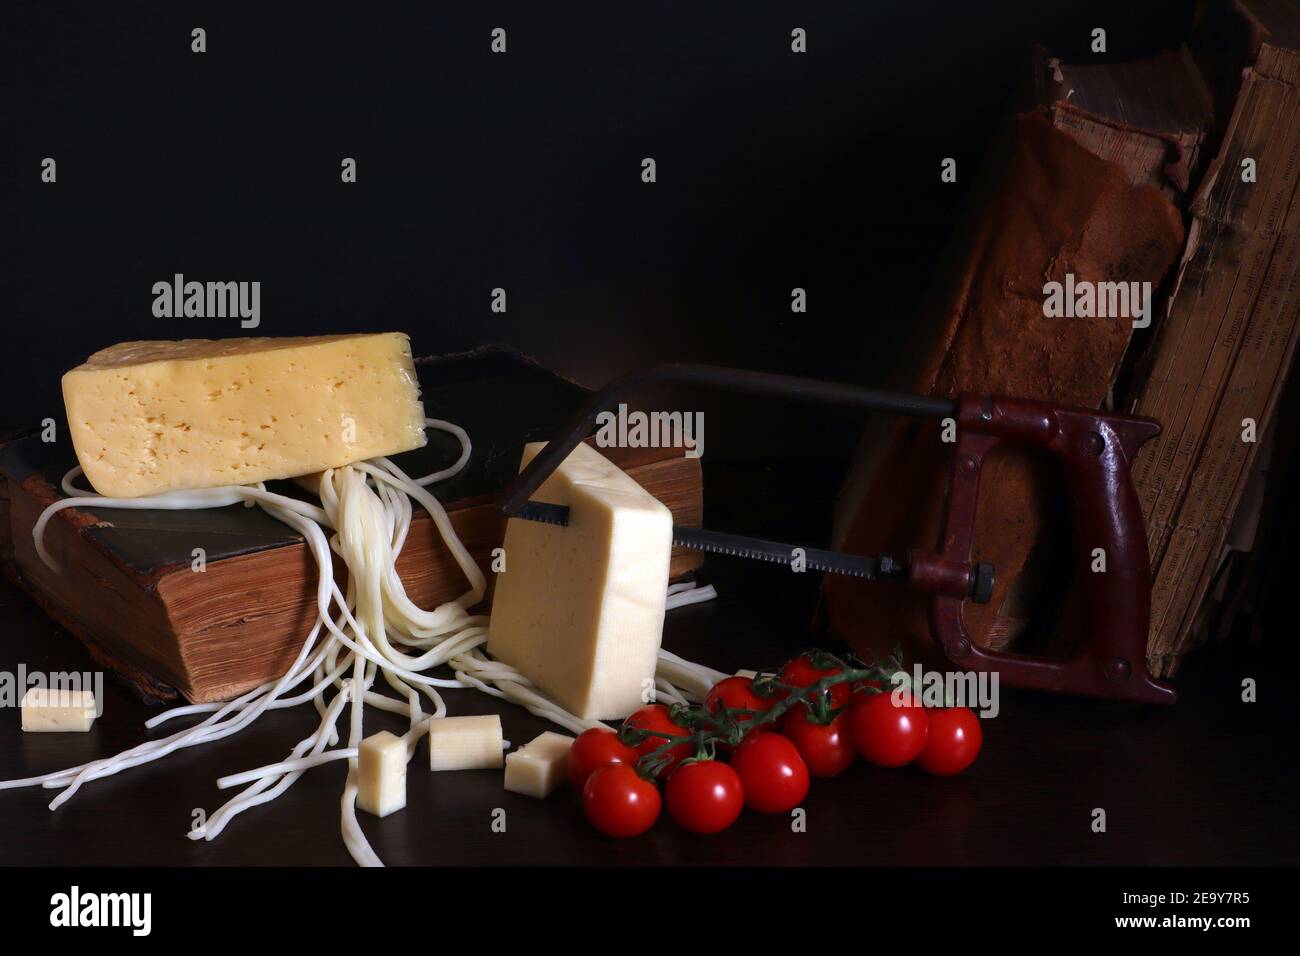 Todavía la vida con tres quesos, tomates cherry, libros viejos y sierra de brazo, foto comida absurda Foto de stock